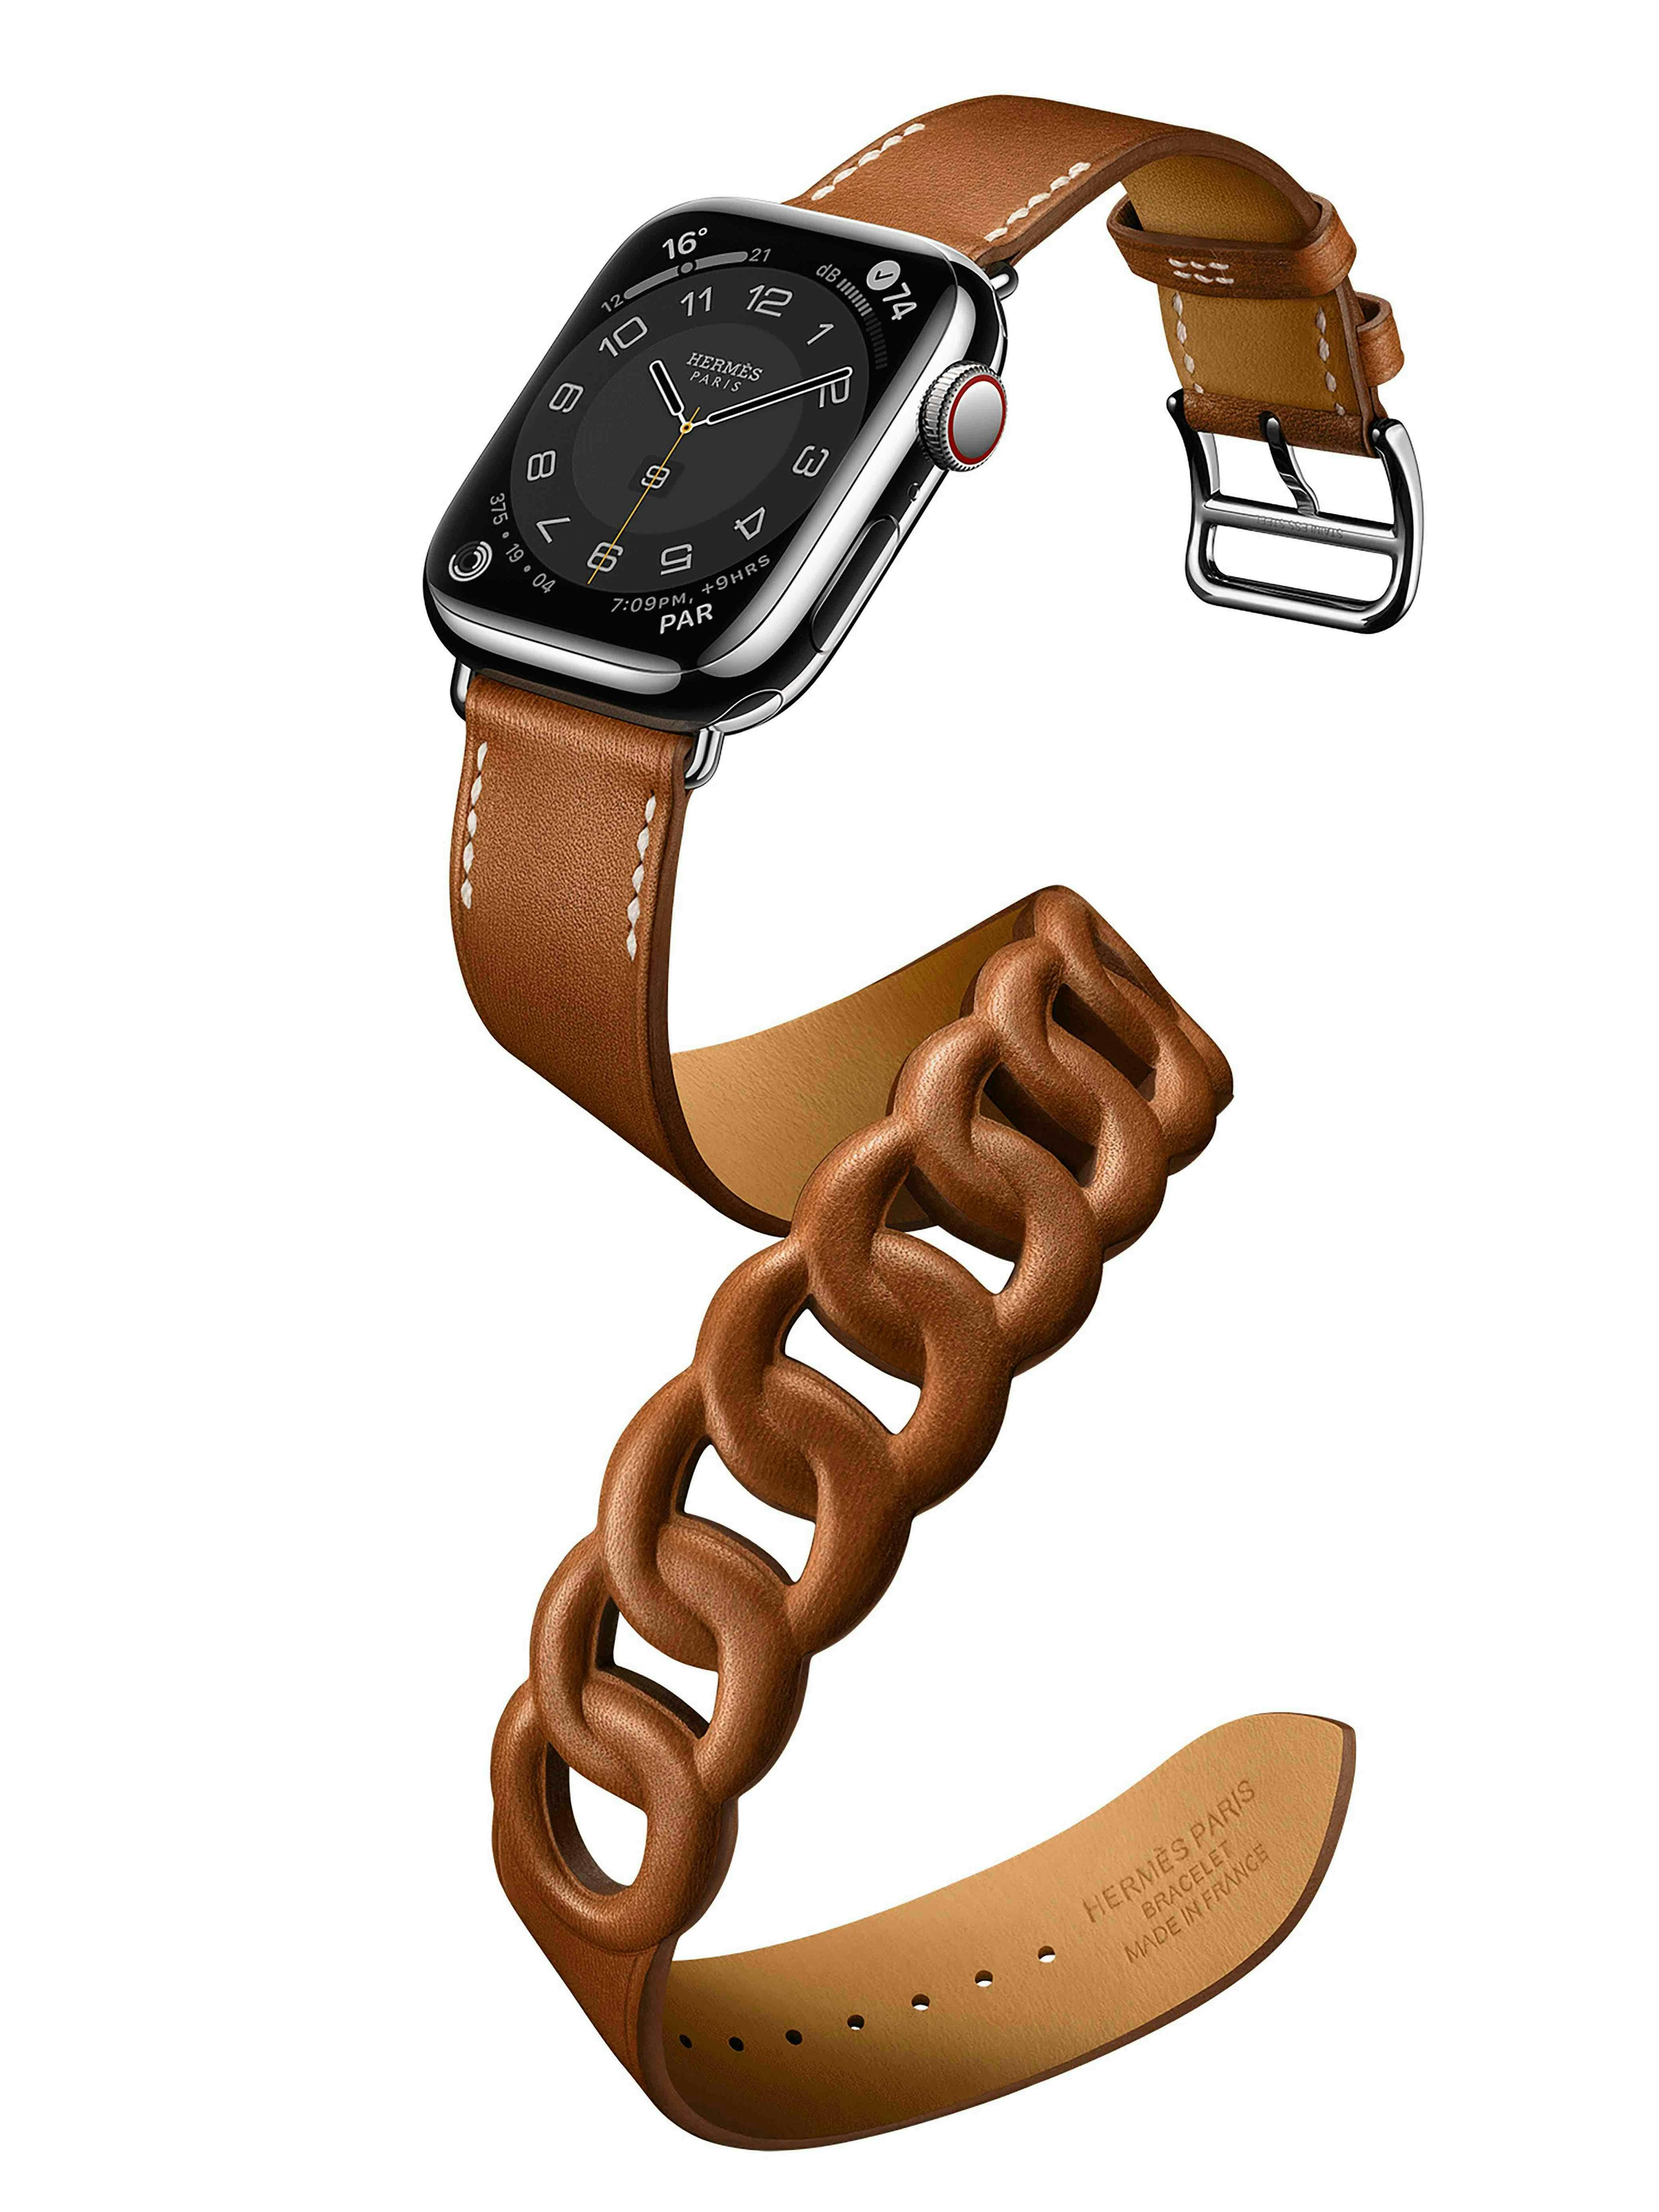 Nella foto il nuovo Apple Apple Watch Hermès serie 7